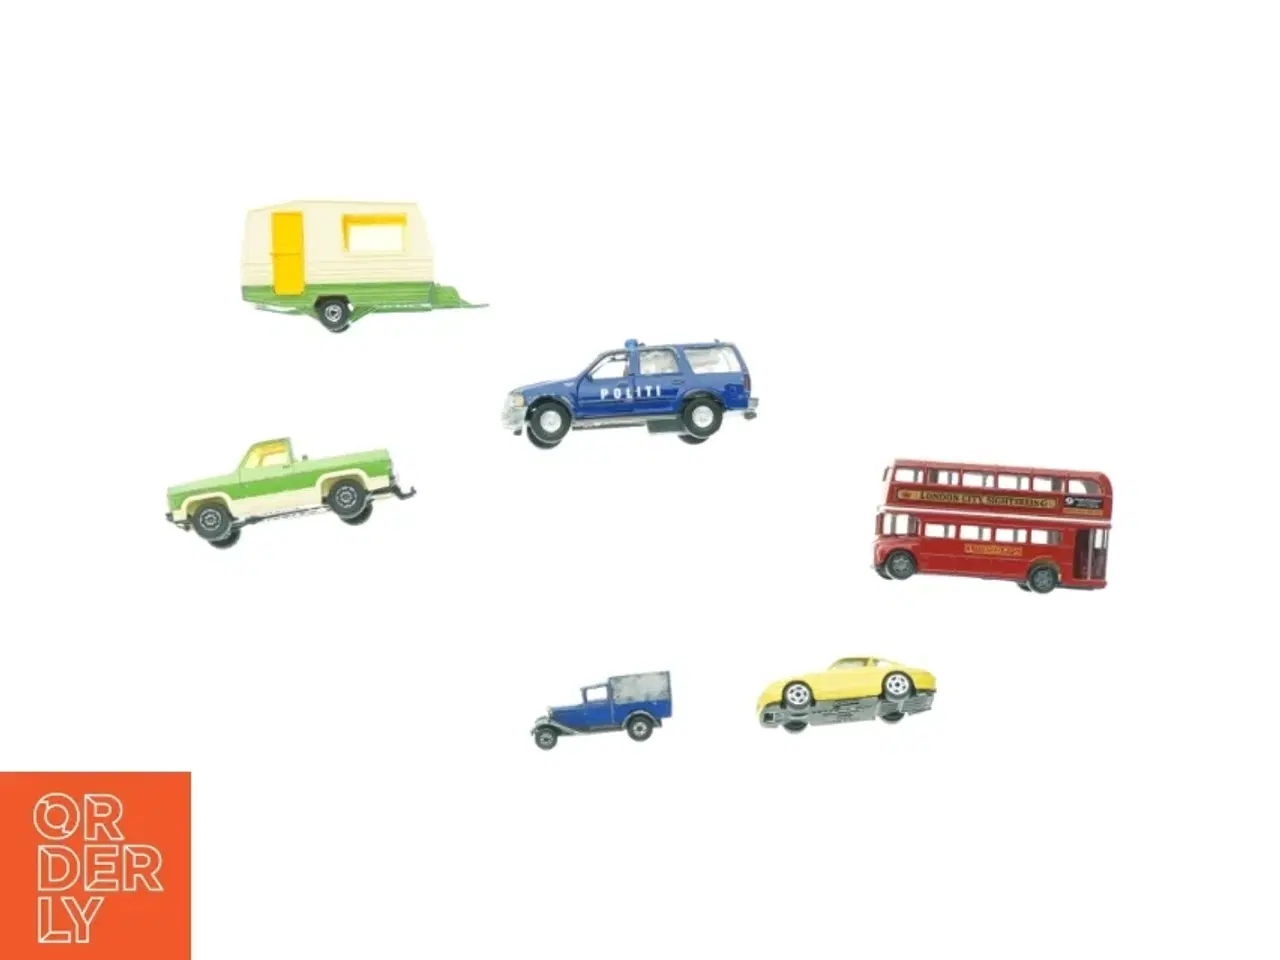 Billede 1 - Samling af Matchbox biler fra Matchbox (str. 13 x 5 cm)